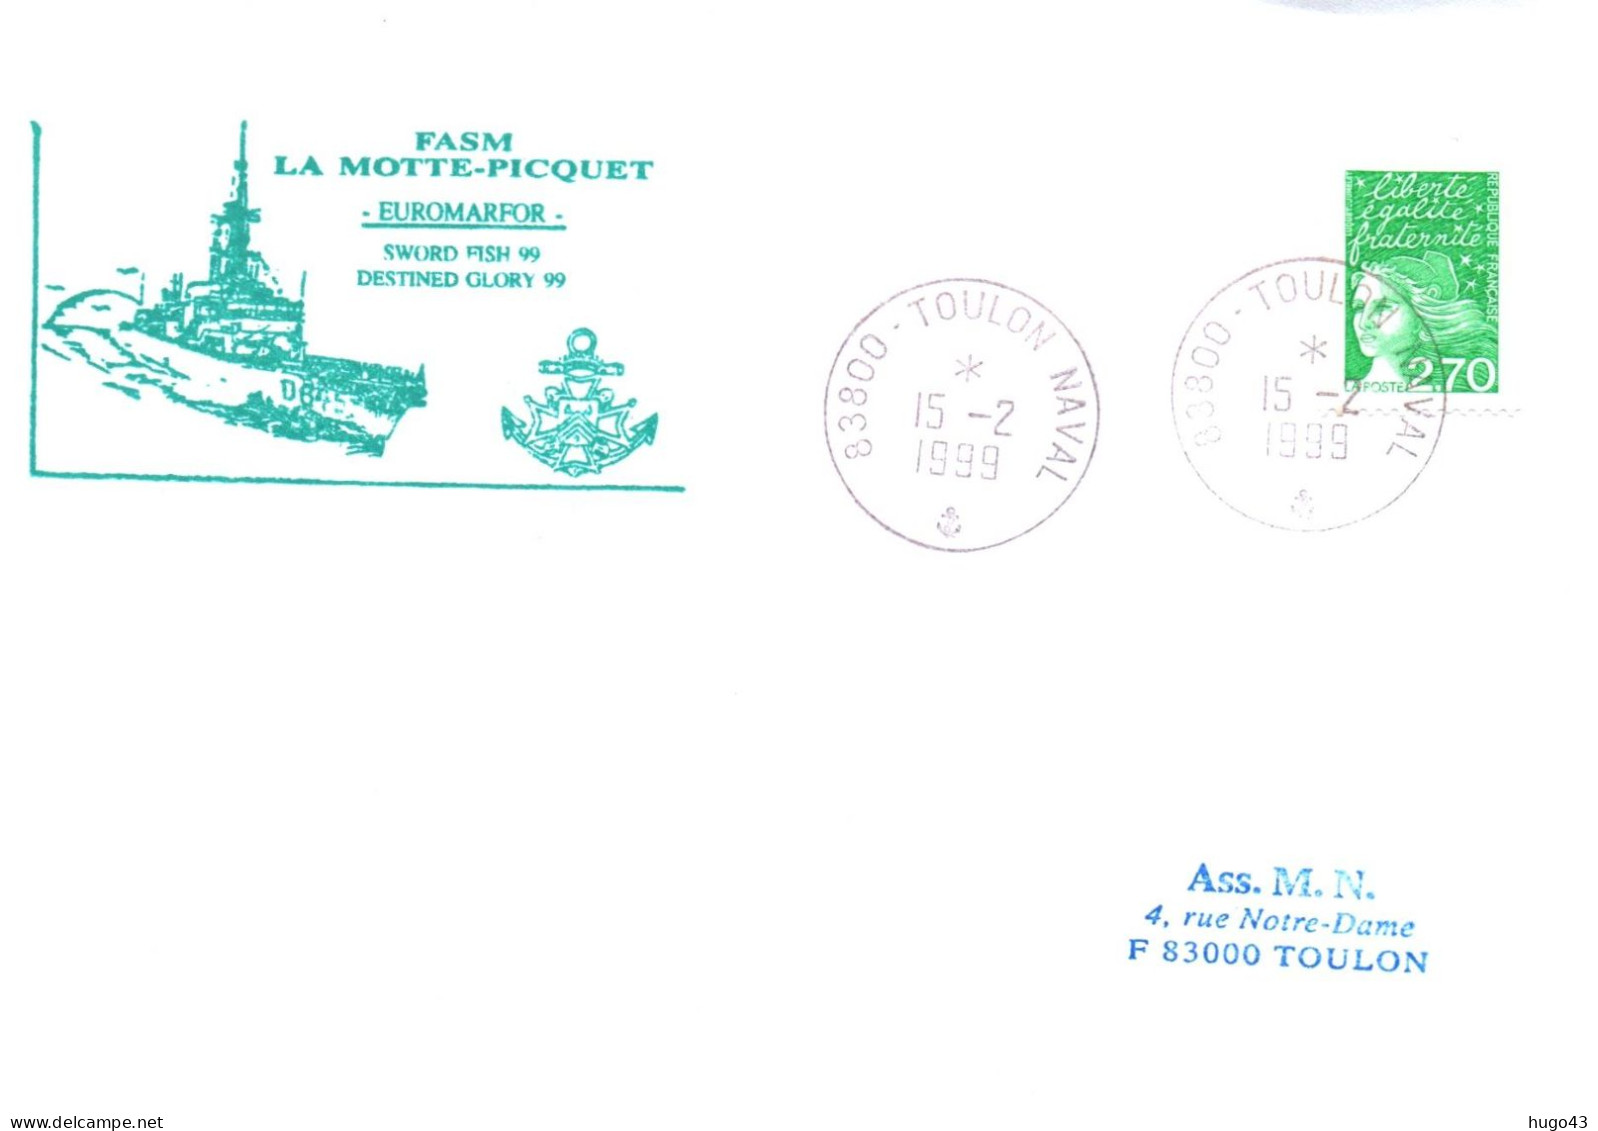 ENVELOPPE AVEC CACHET FREGATE FASM LA MOTTE PICQUET - EUROMARFOR - TOULON NAVAL LE 15/2/1999 - Naval Post